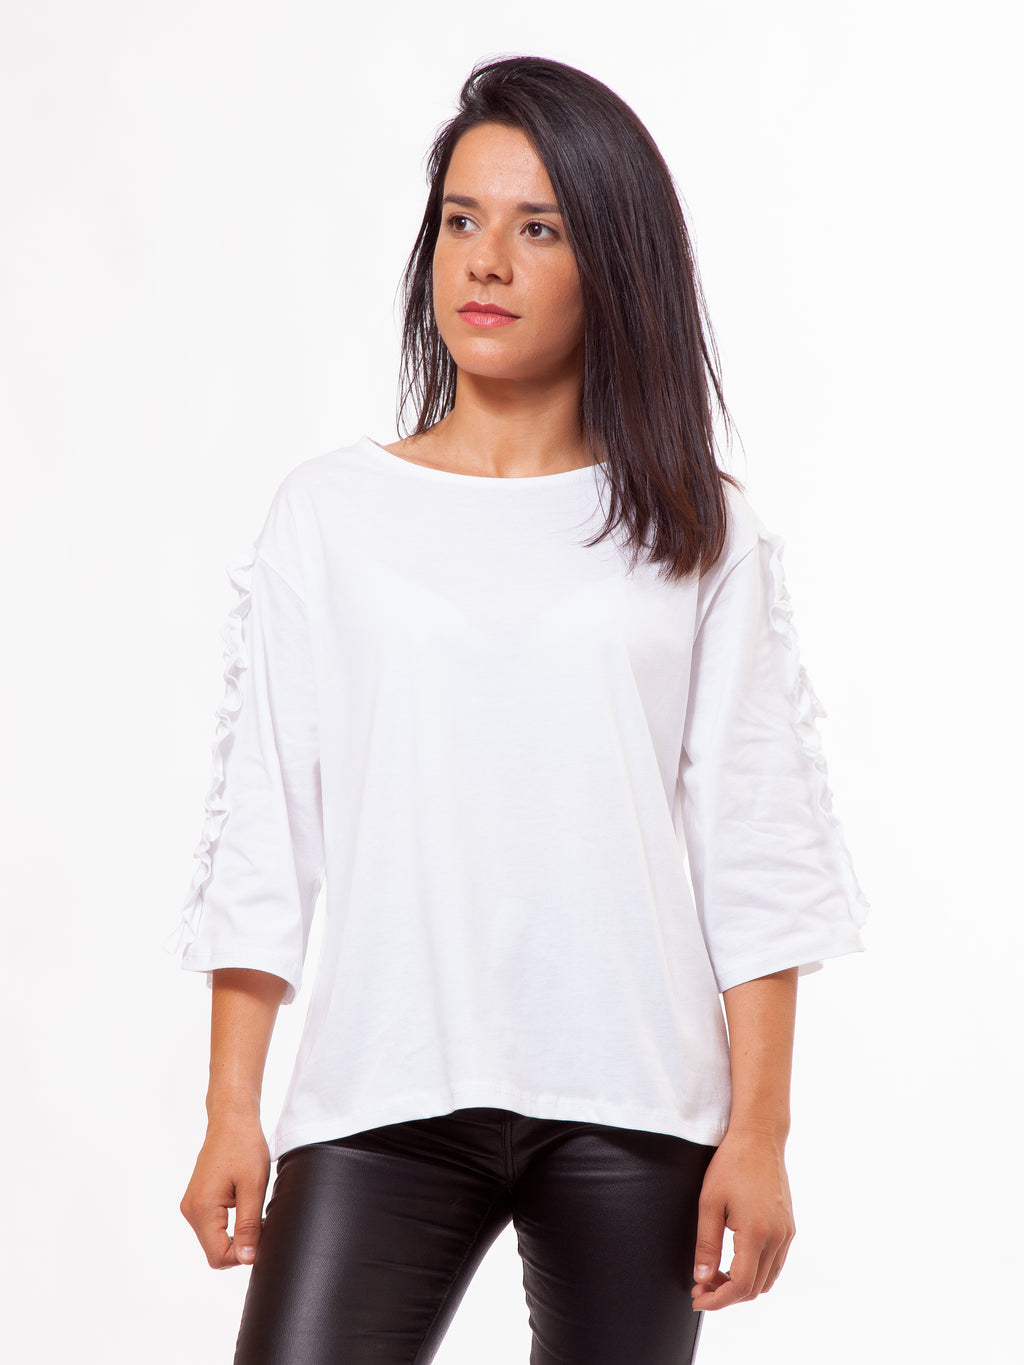 Ruffled Sleeve Top white organic t-shirt